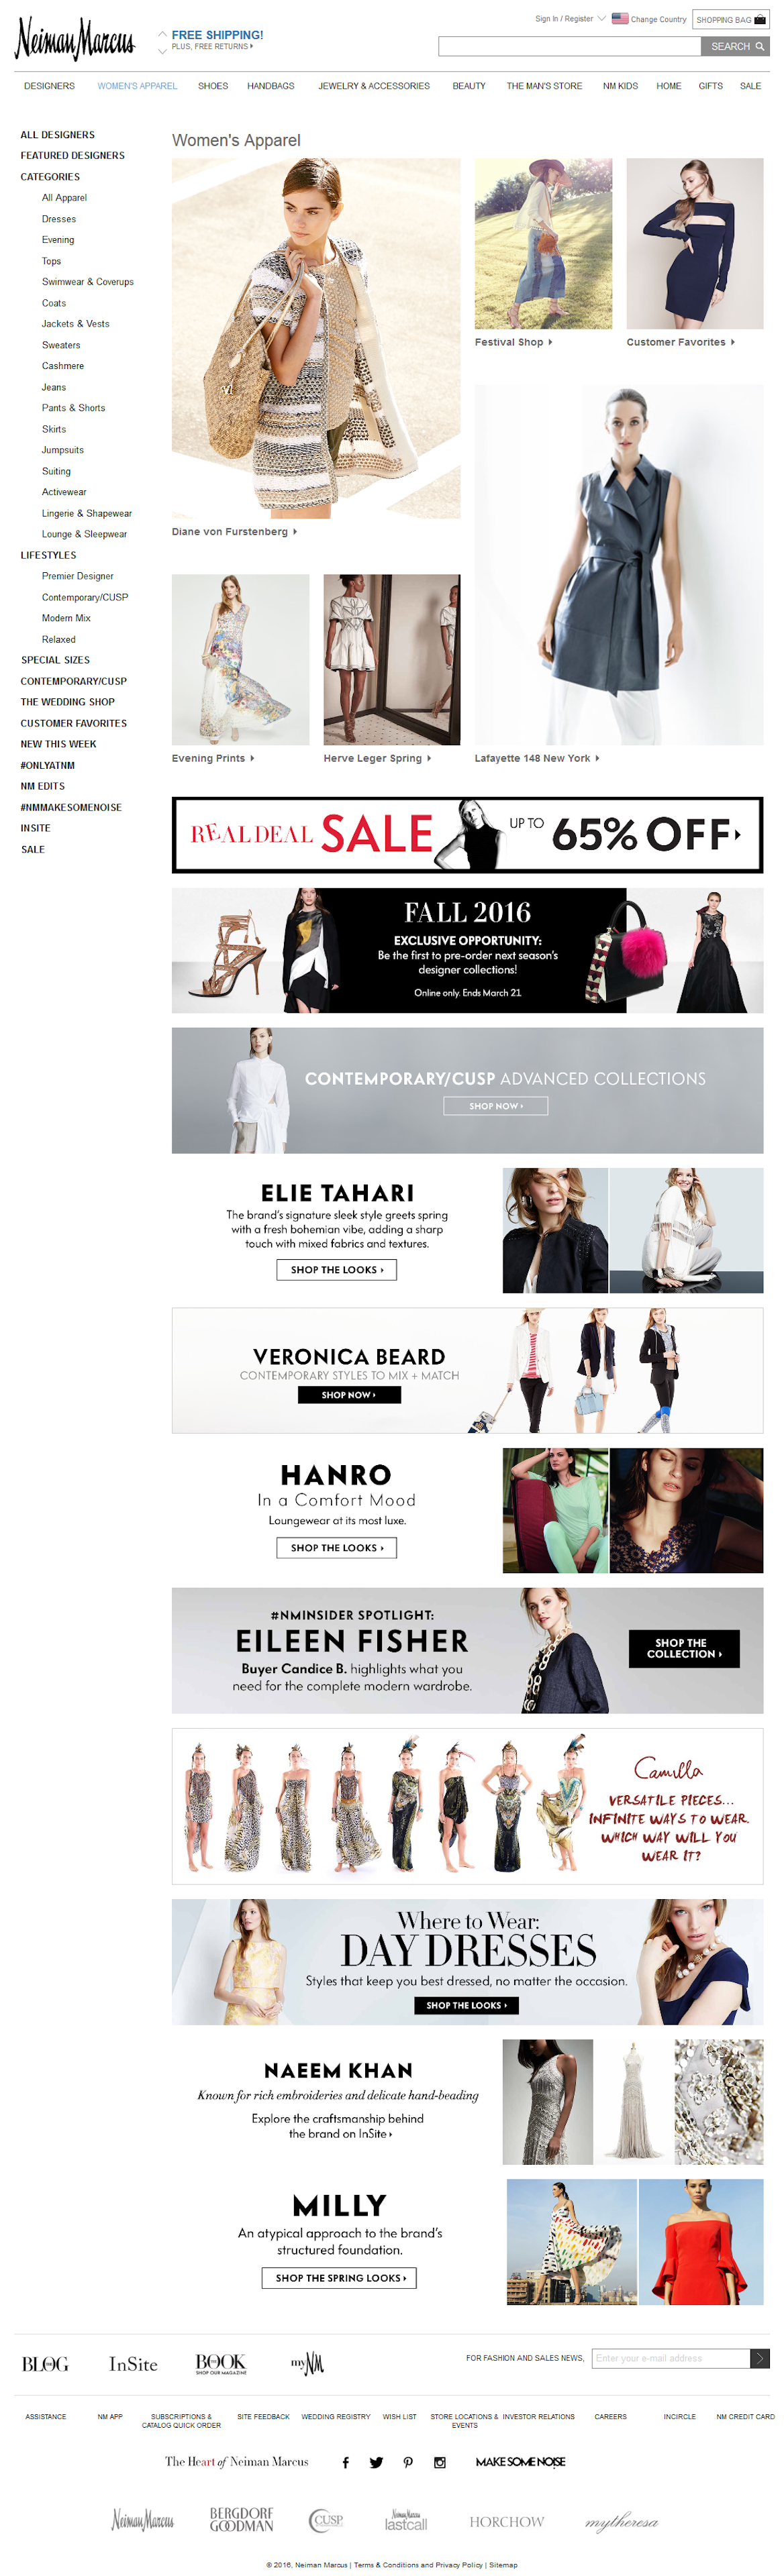 Desktop screenshot of Neiman Marcus